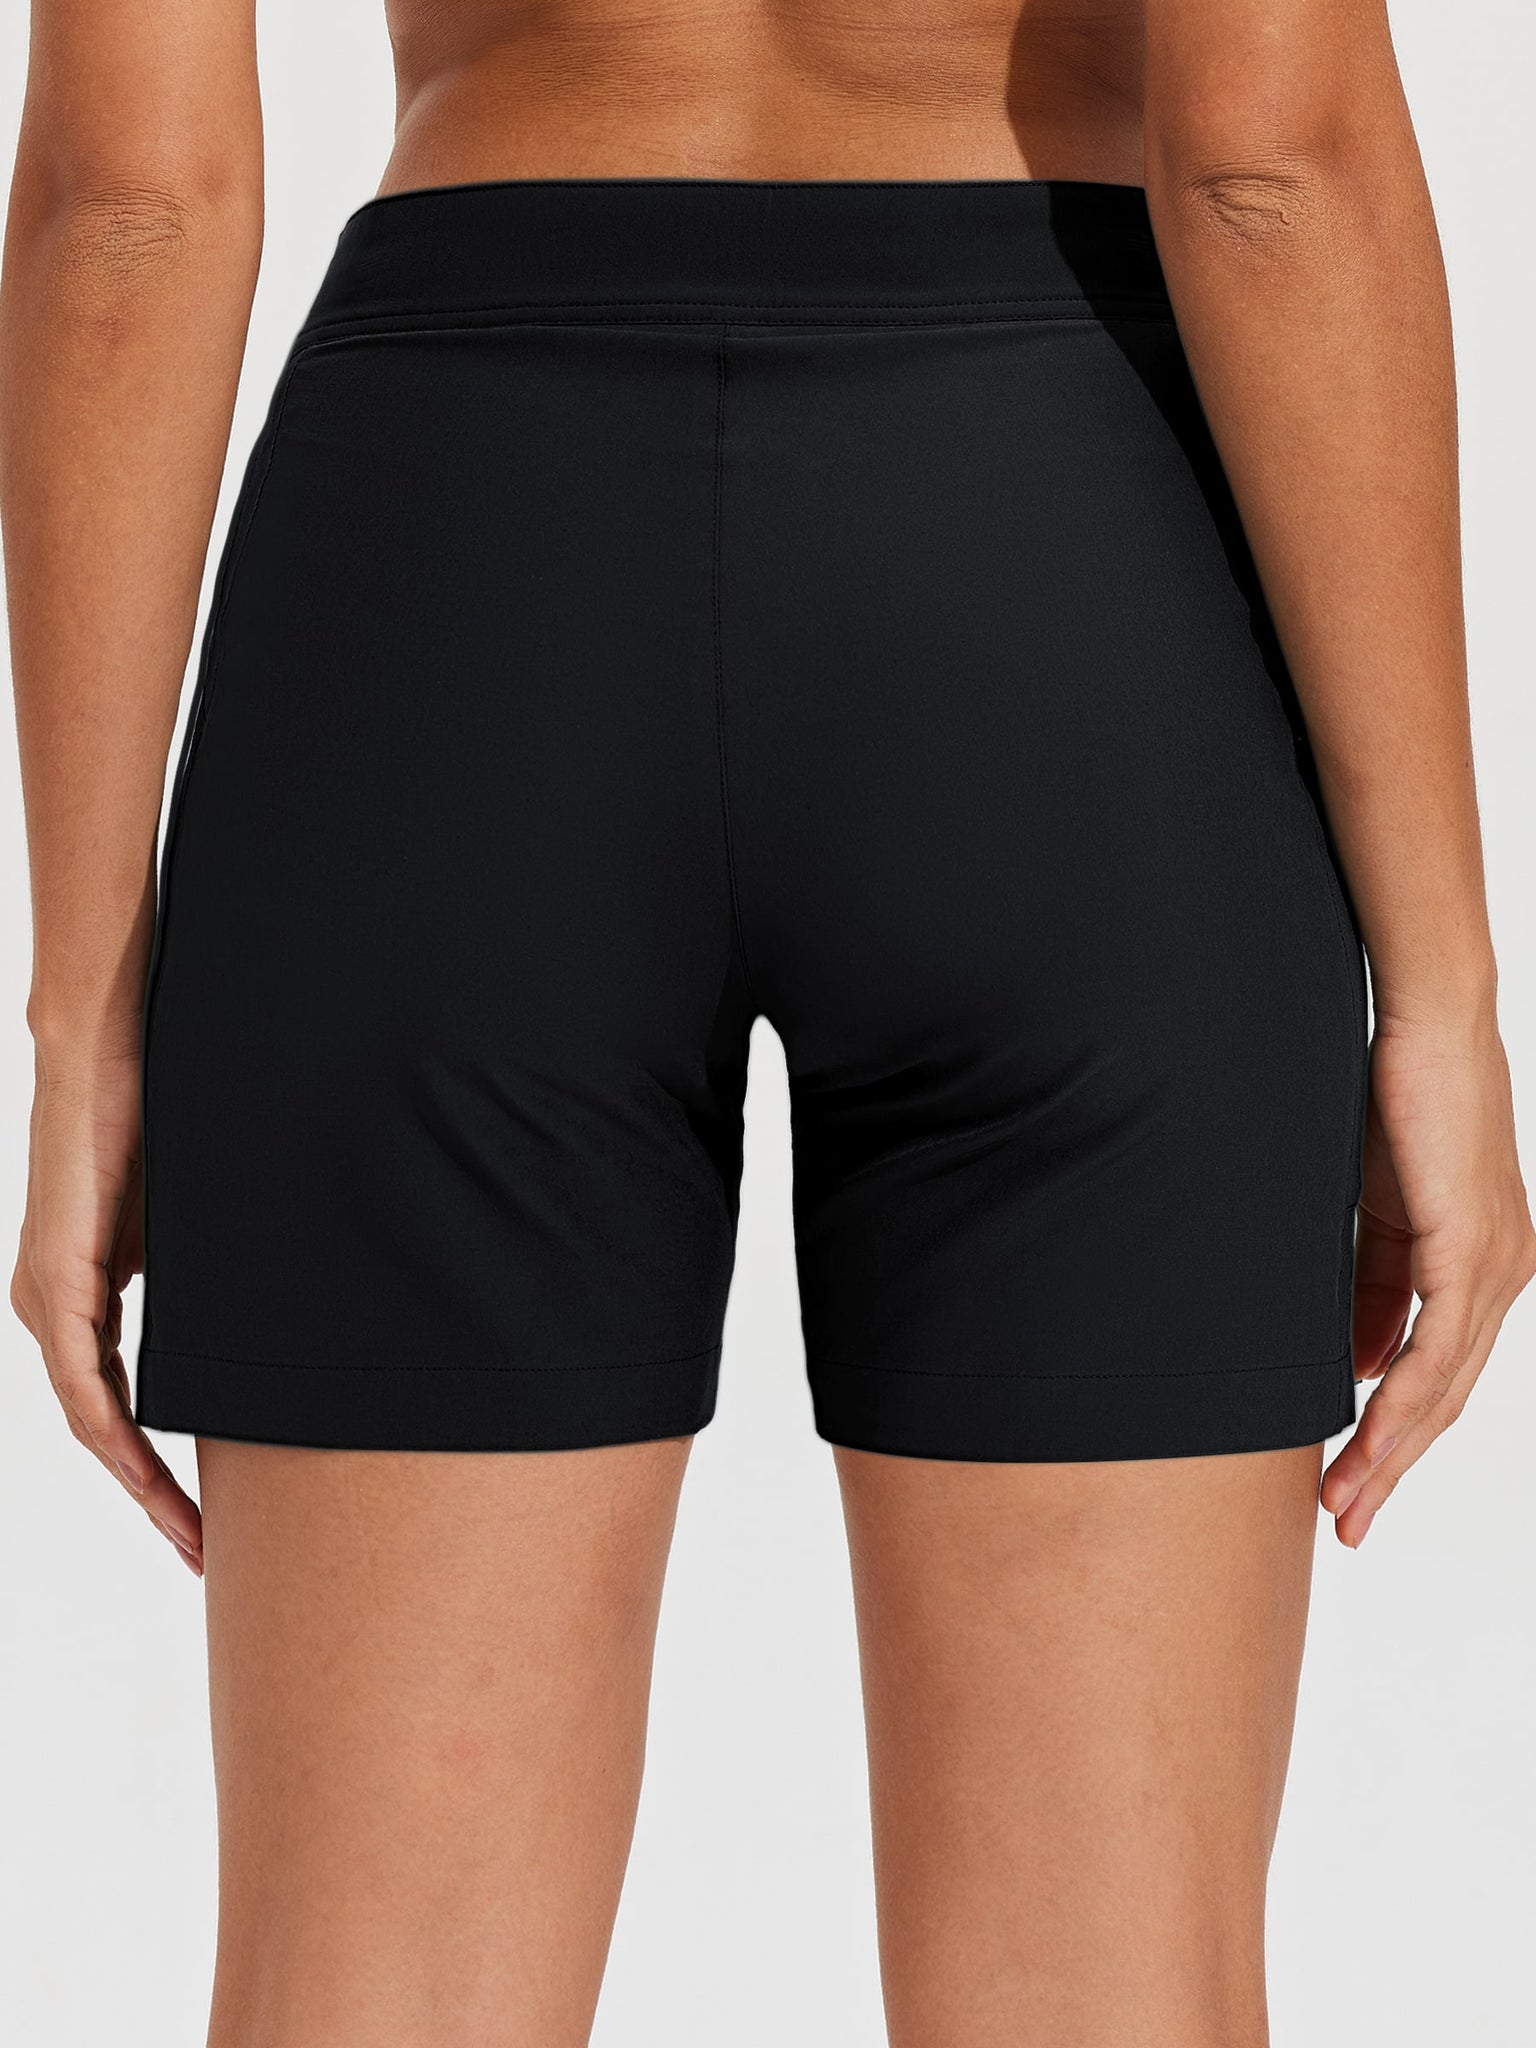 Women's Fixed Waist Board Shorts_Black_model3